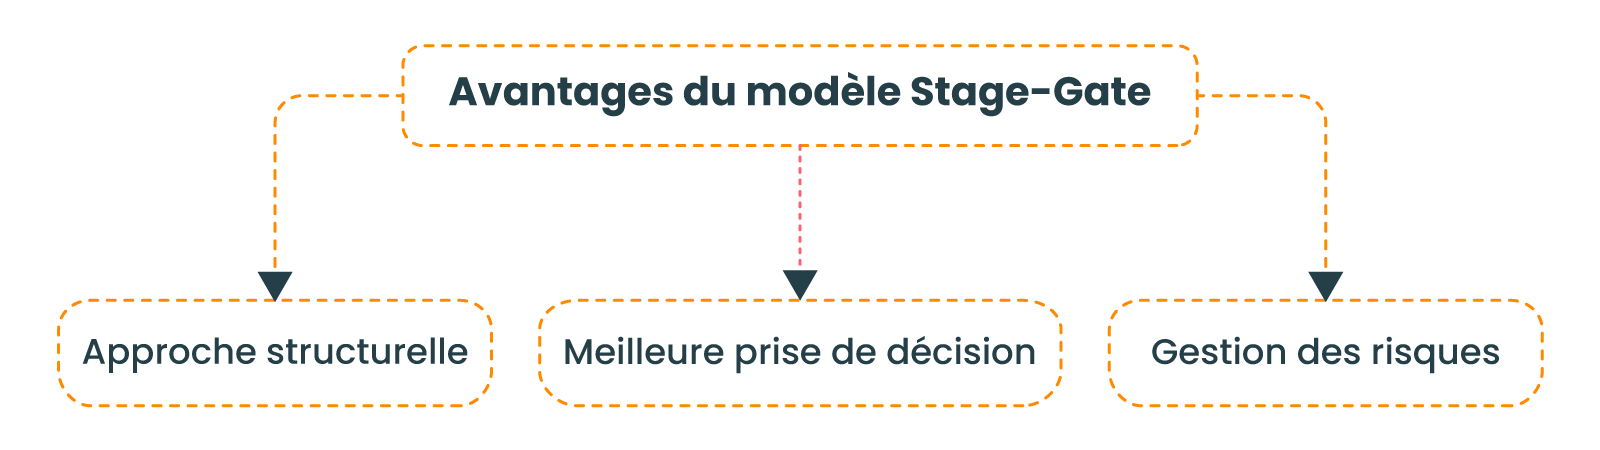 Avantages du modèle Stage-Gate